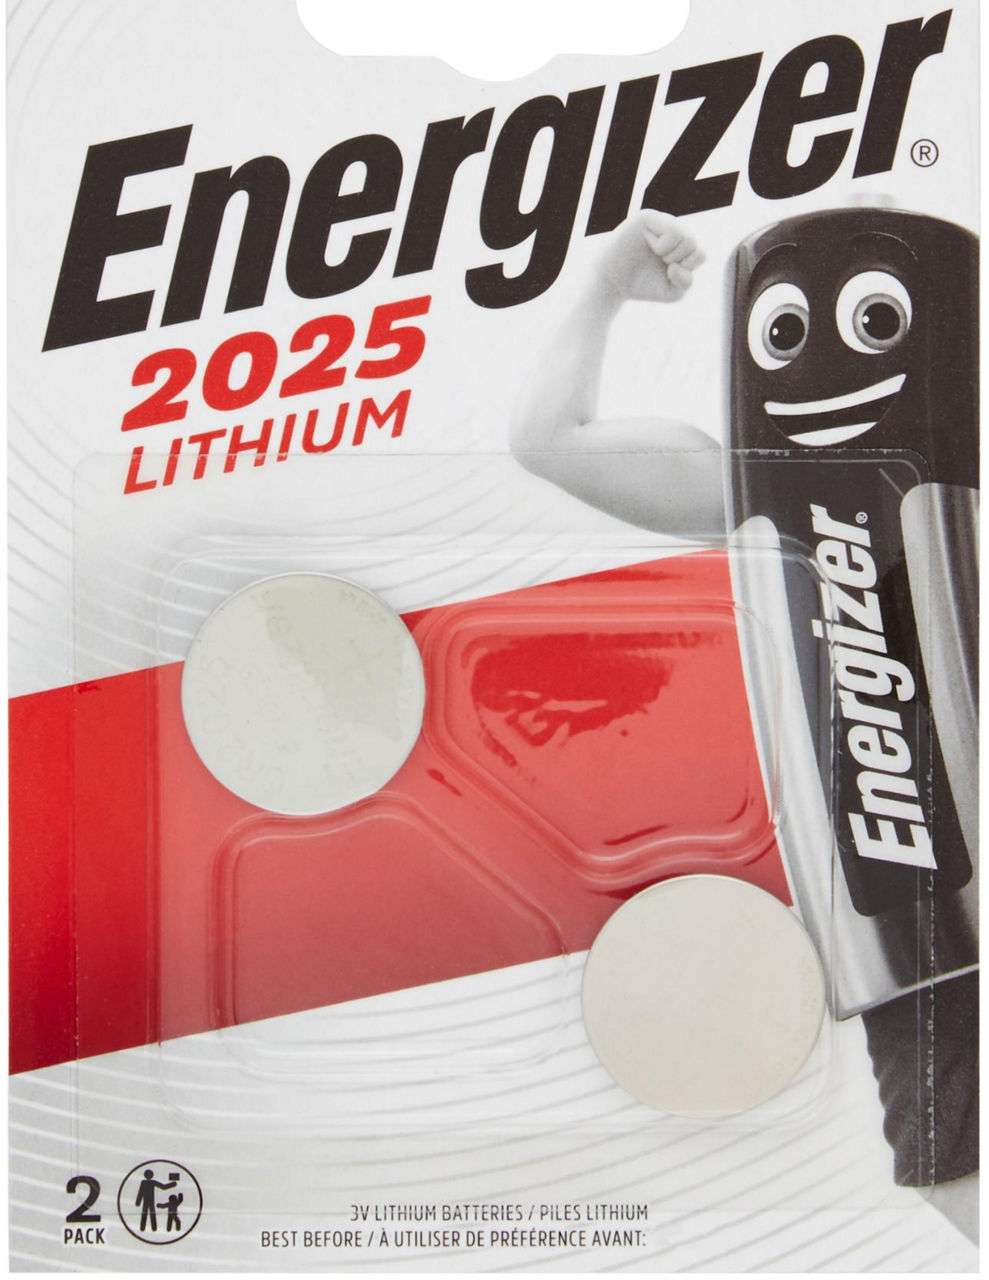 2 pile lithium 2025